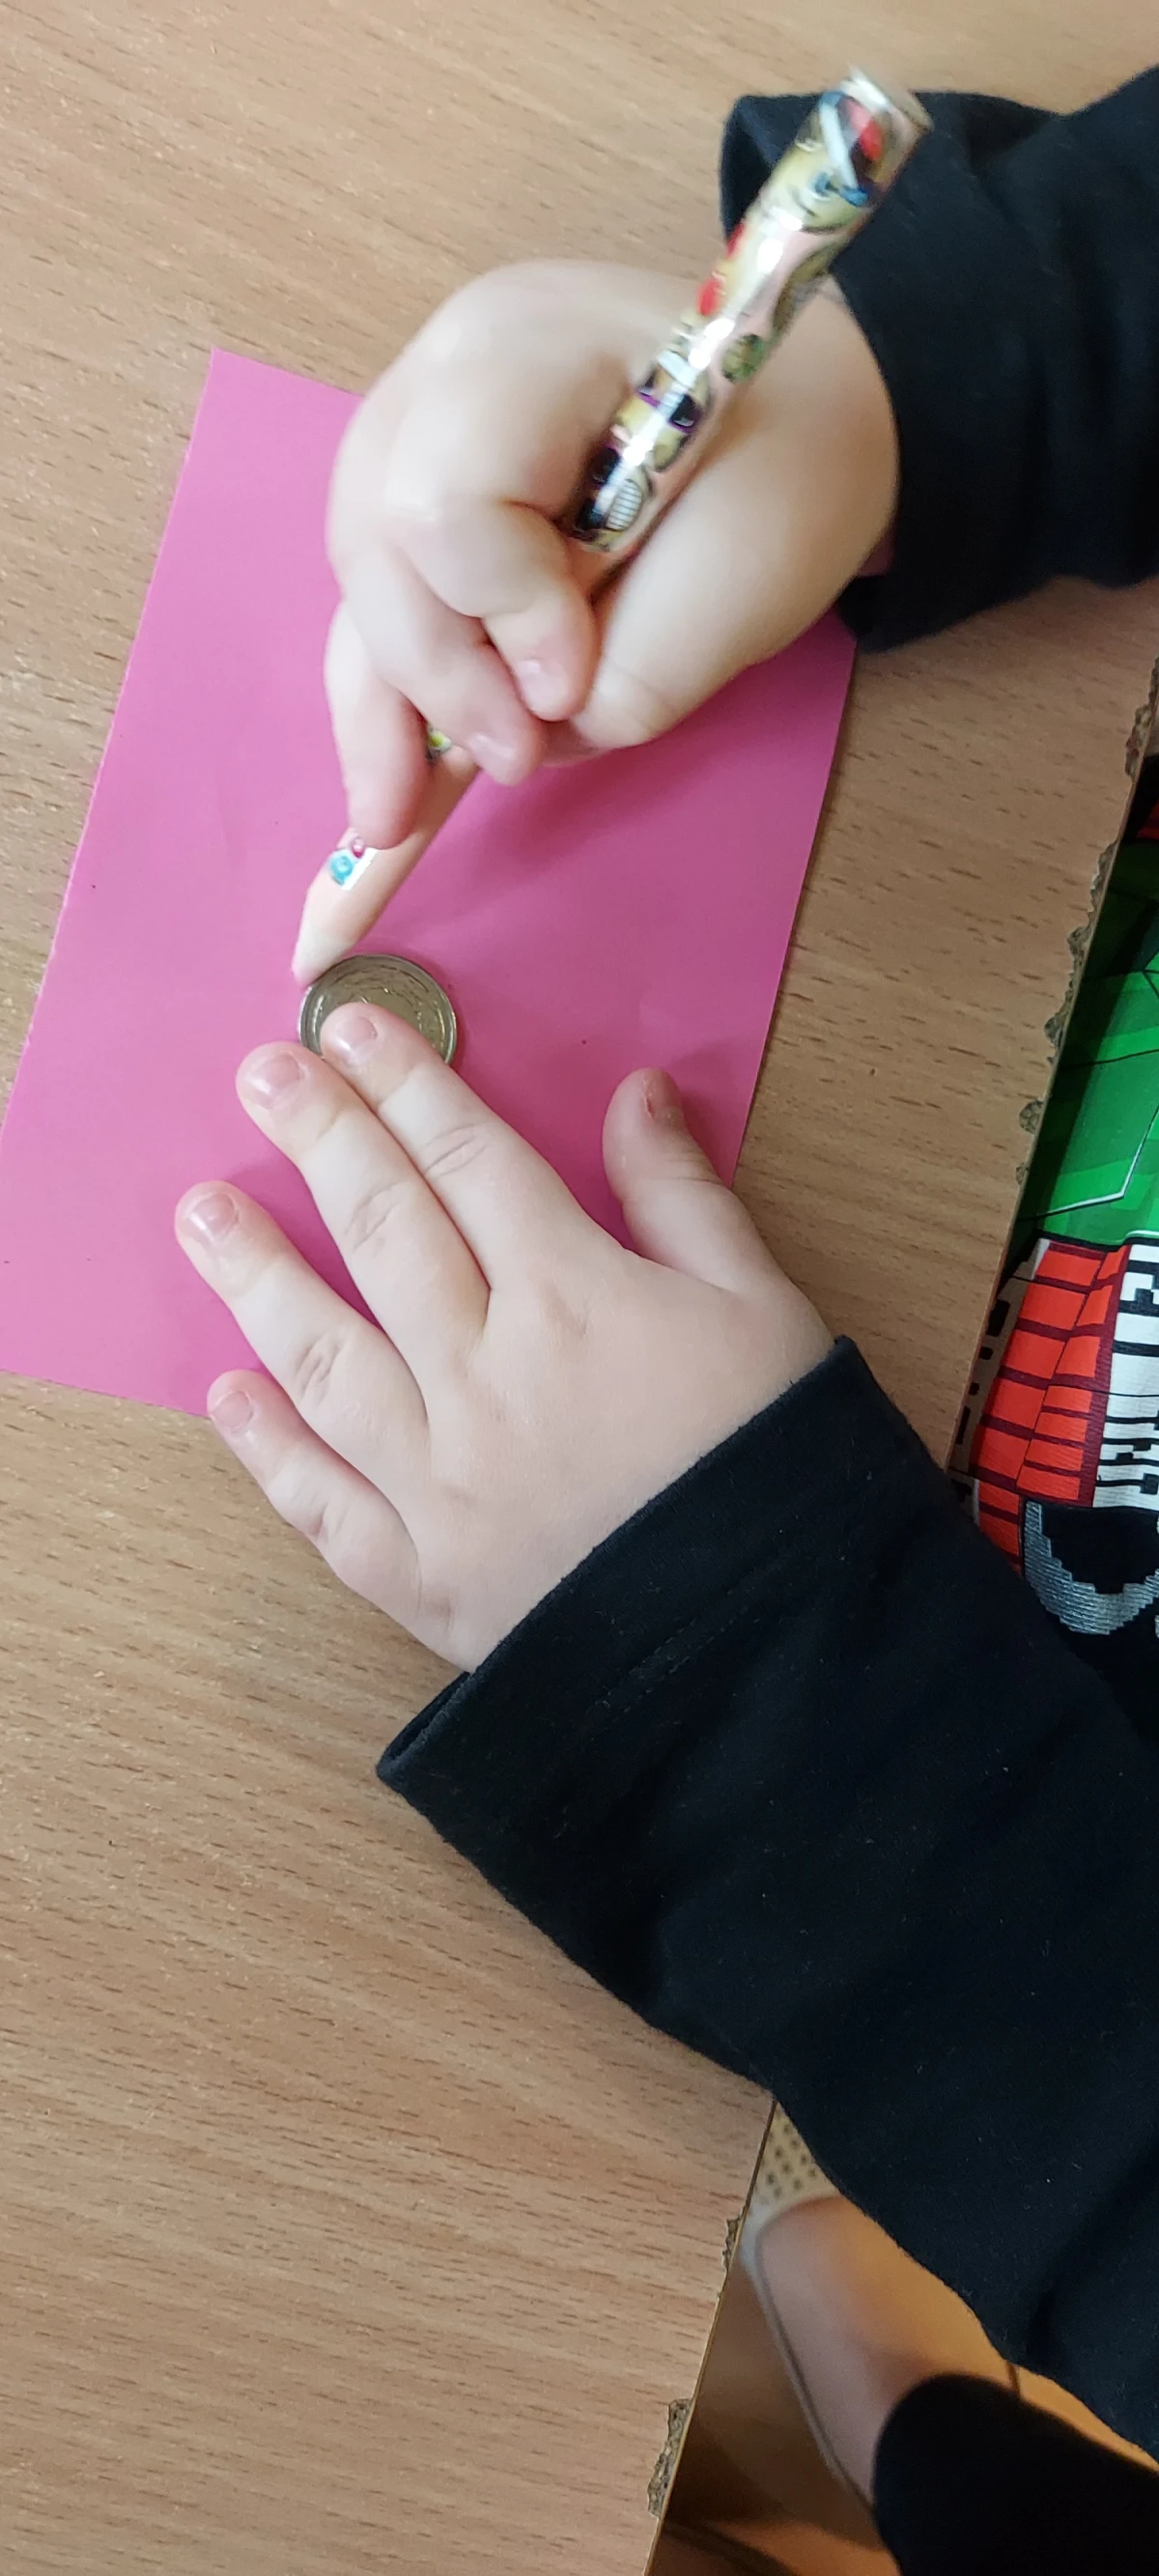 Dziecko obrysowujące monetę